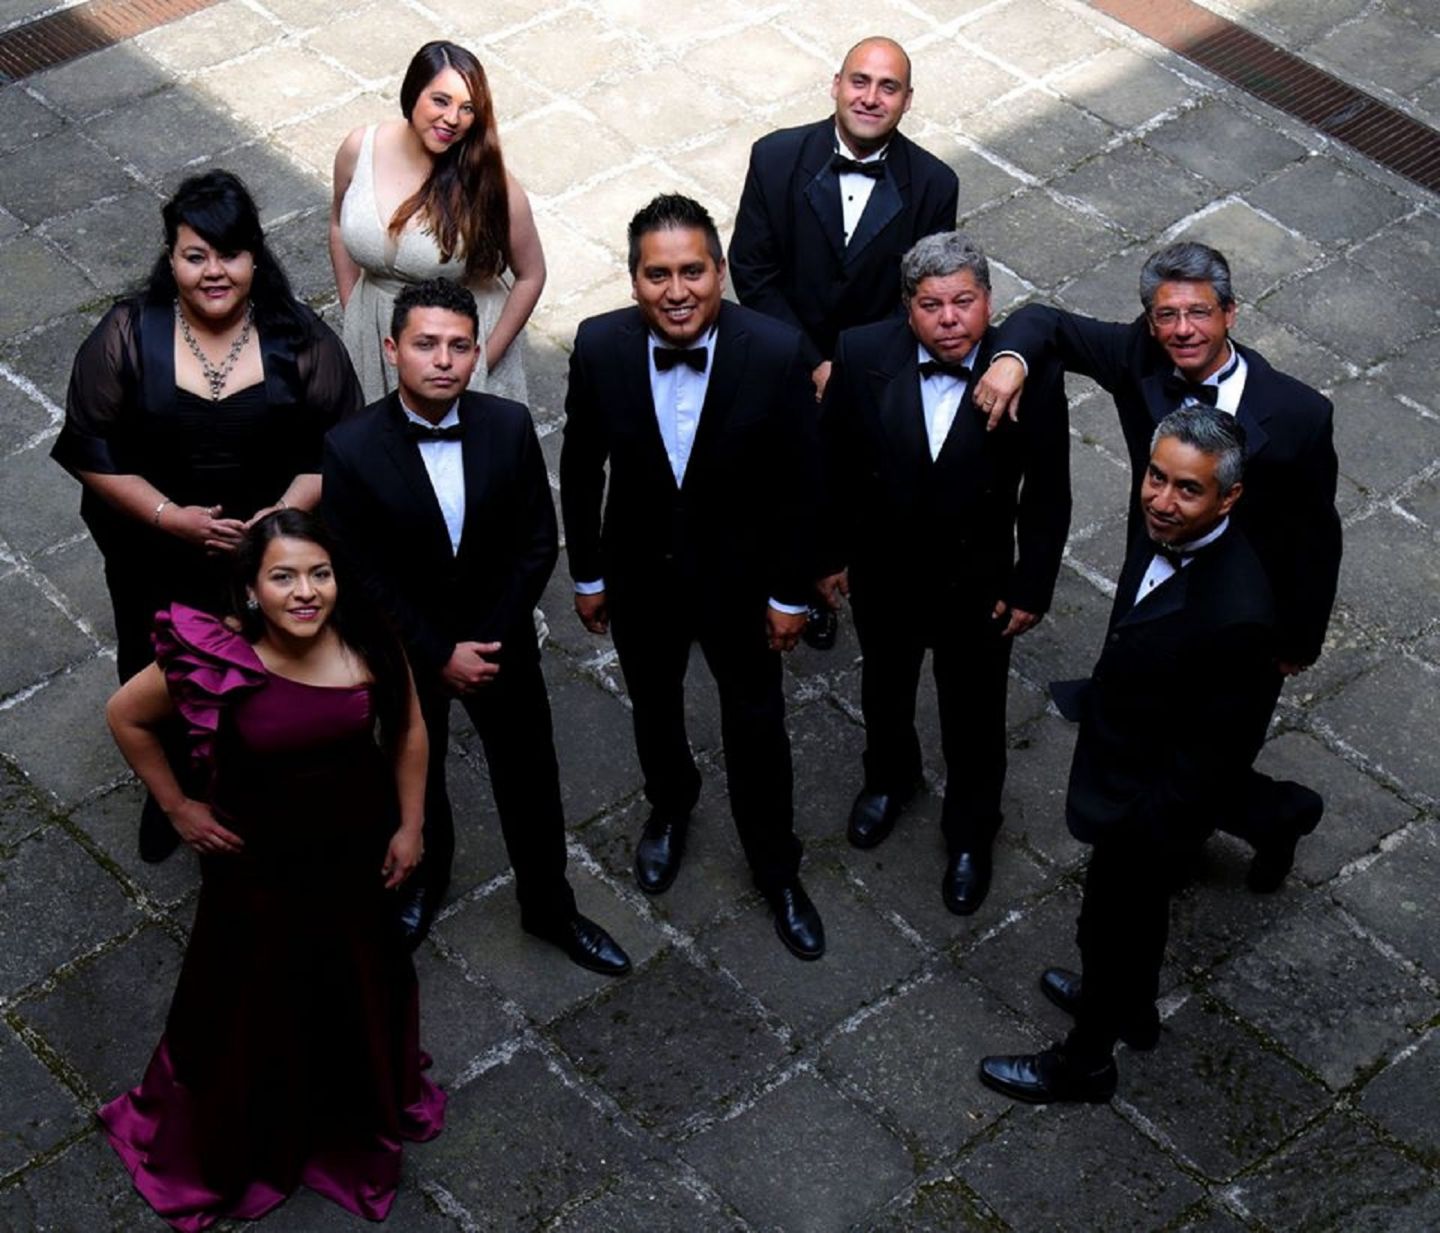 Inicia octeto vocal gira artística por territorio mexiquense 